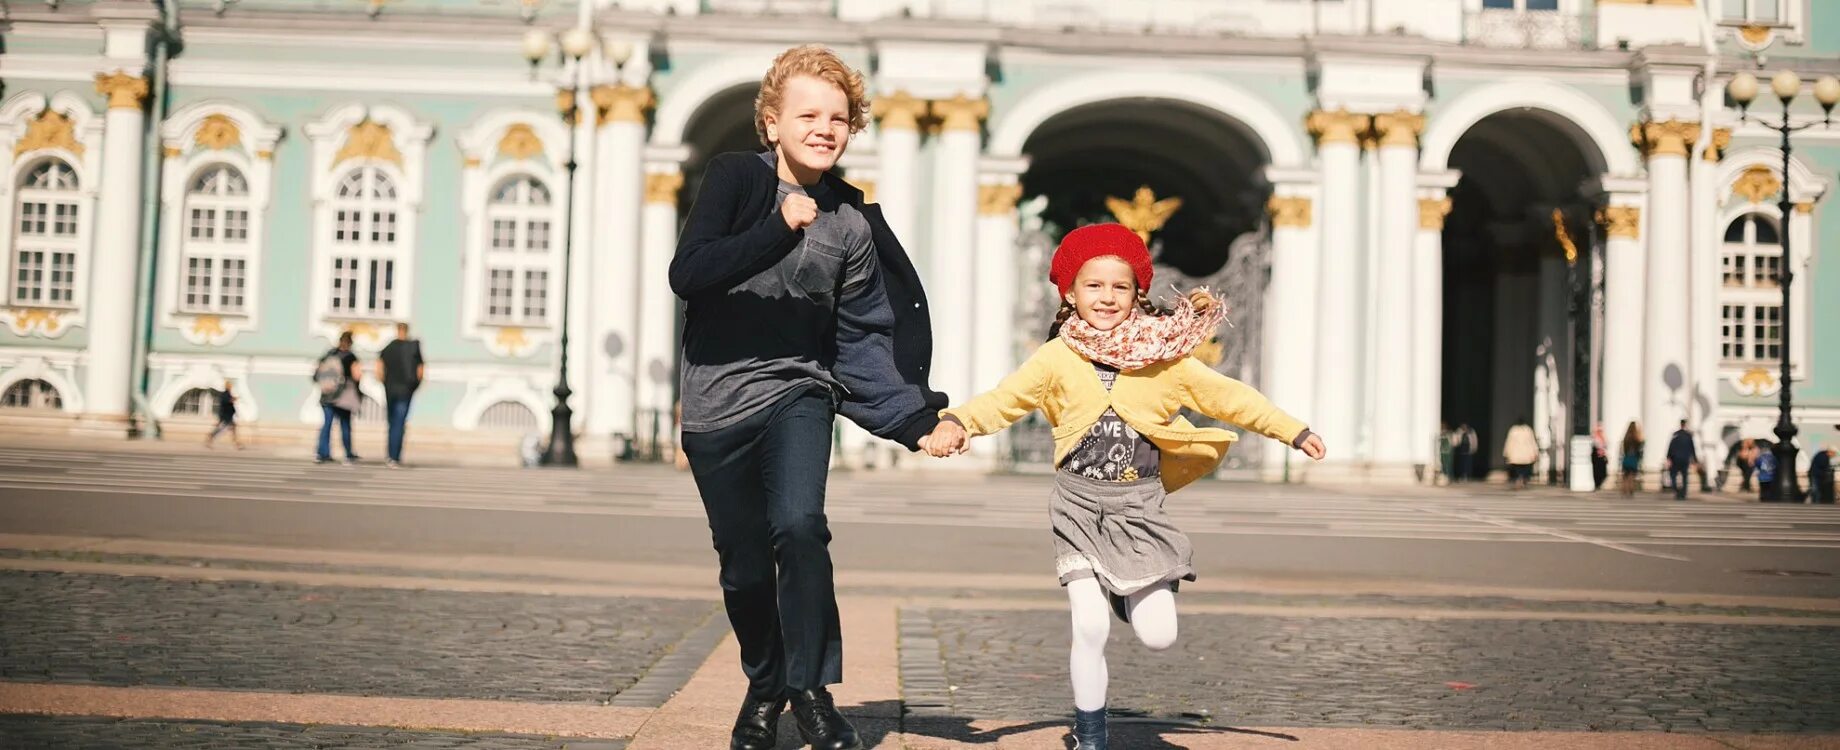 Сходить с ребенком питере. Дети на экскурсии. Экскурсии для детей в Санкт-Петербурге. Семья на прогулке в Питере.